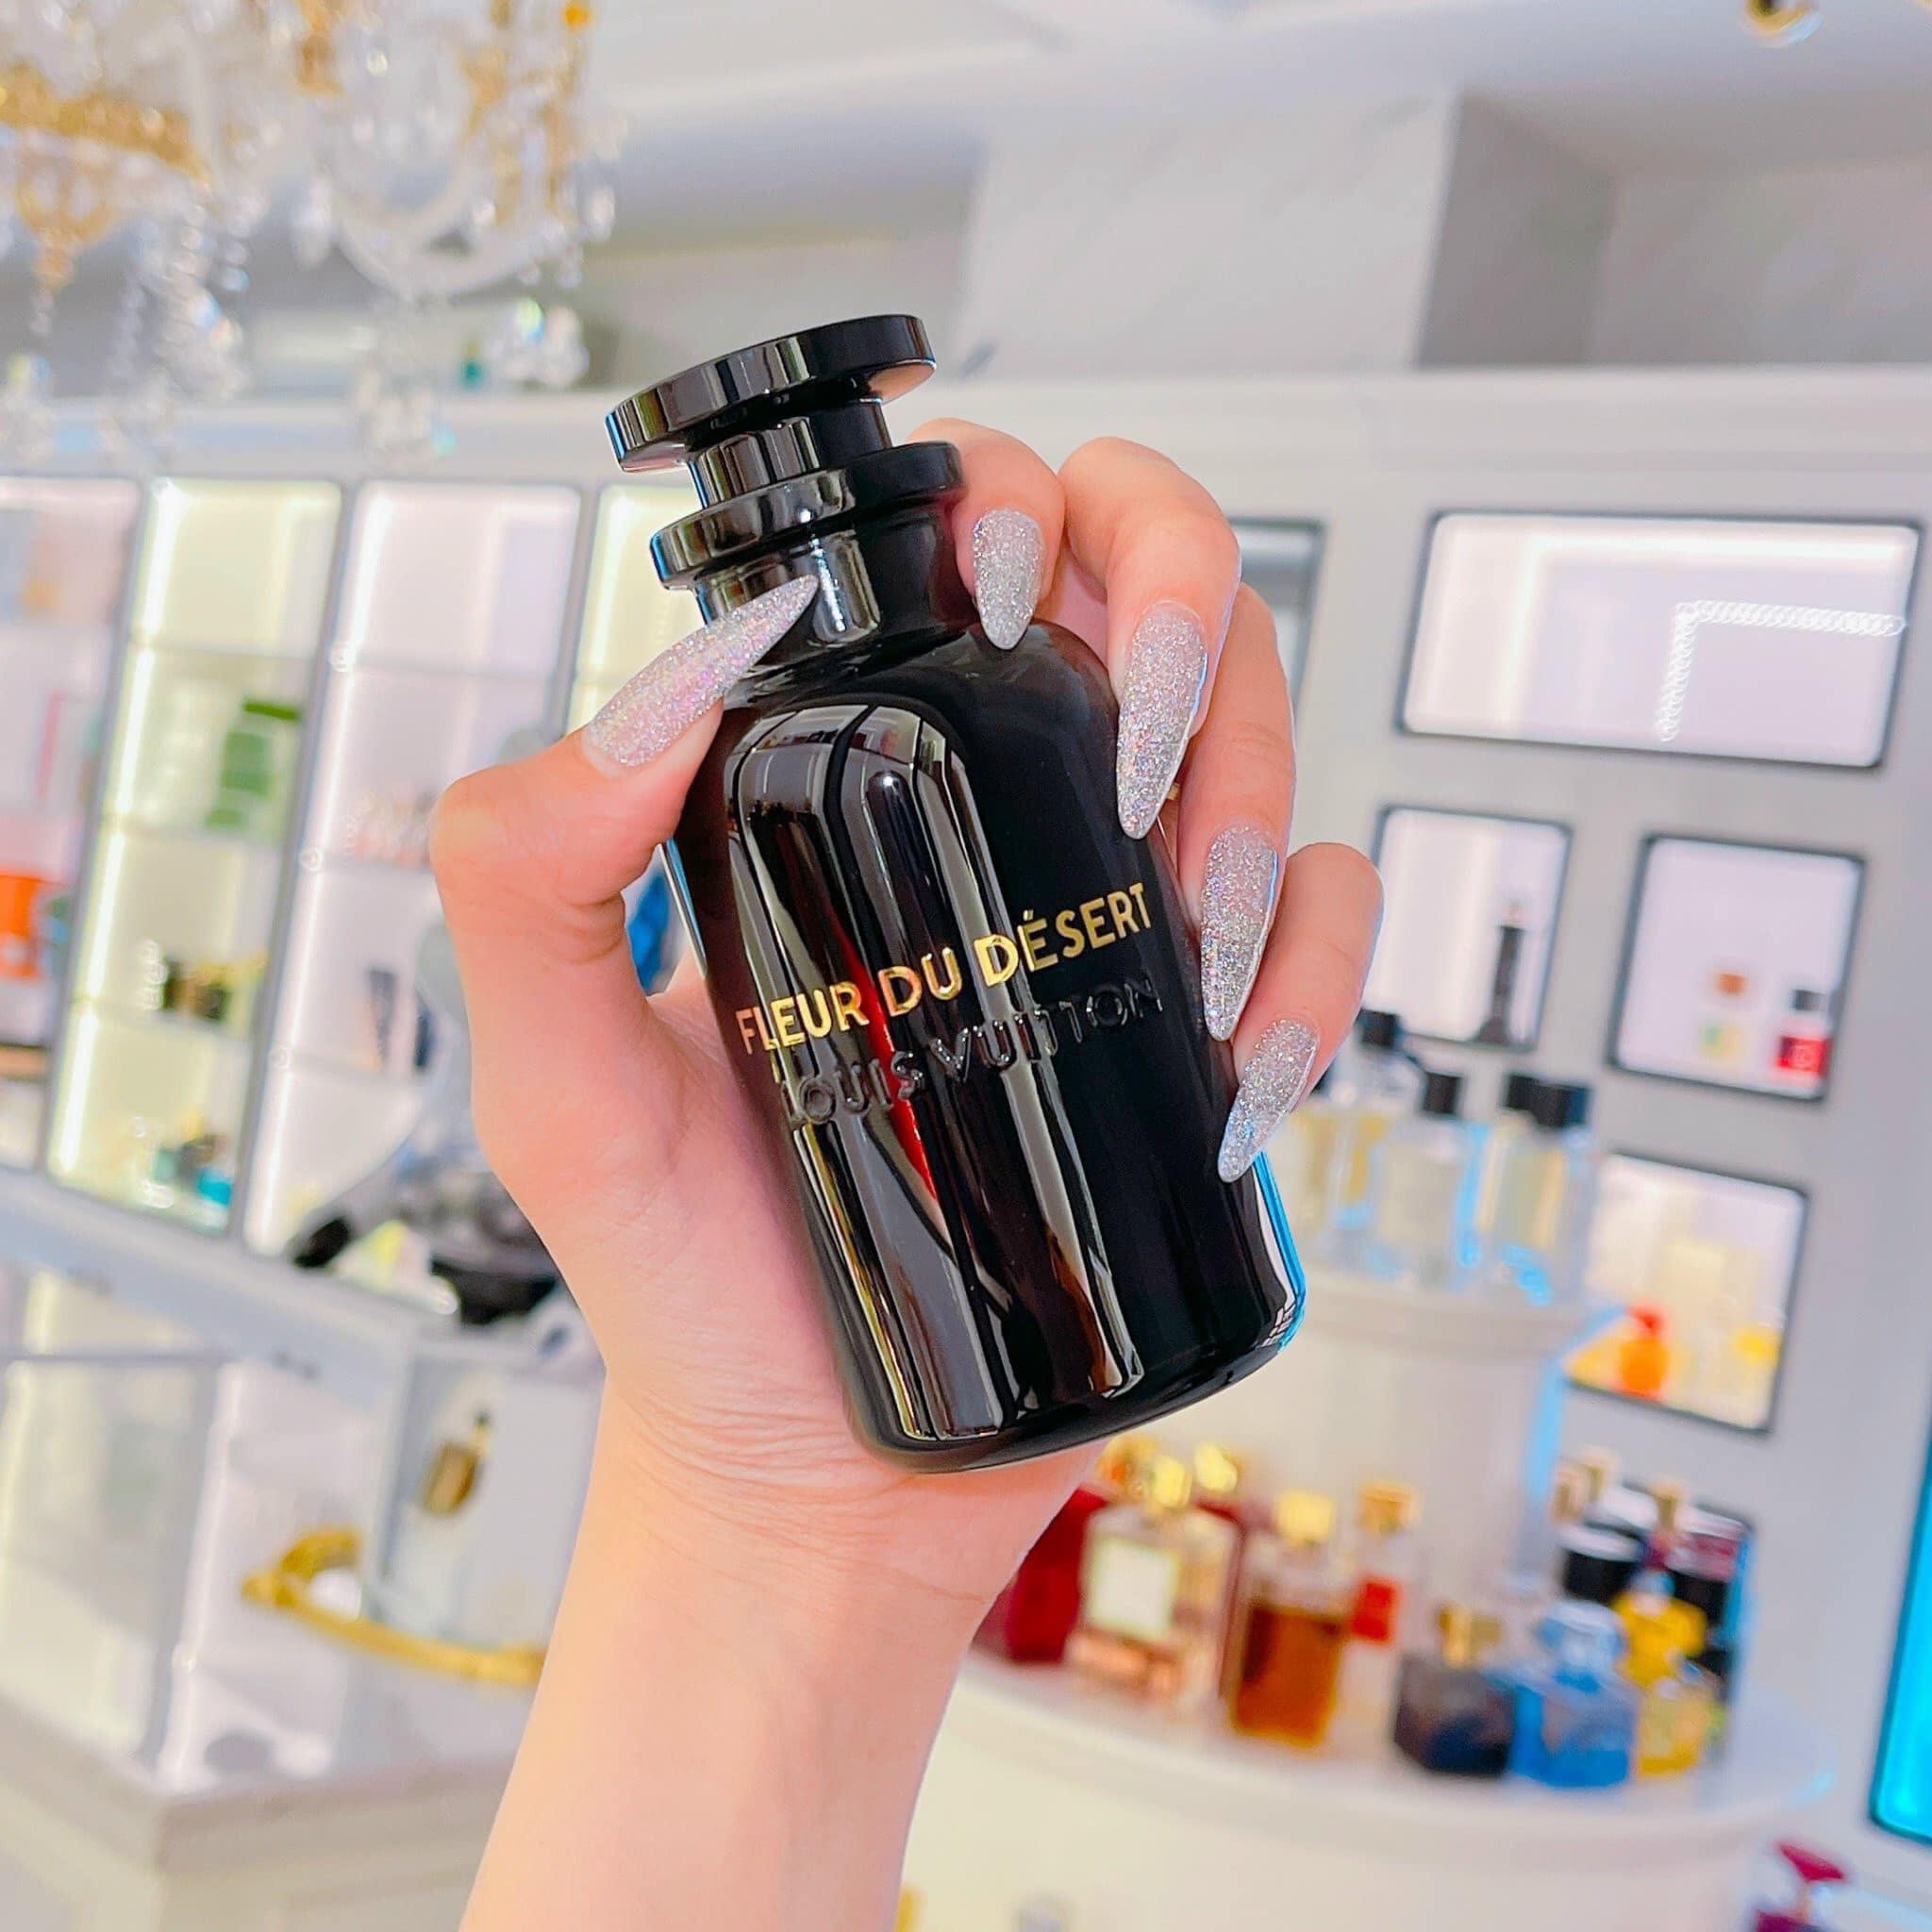 Louis Vuitton Fleur du Désert  Mùi hương lấy cảm hứng Trung Đông   StyleRepublikcom  Thời Trang sáng tạo và kinh doanh